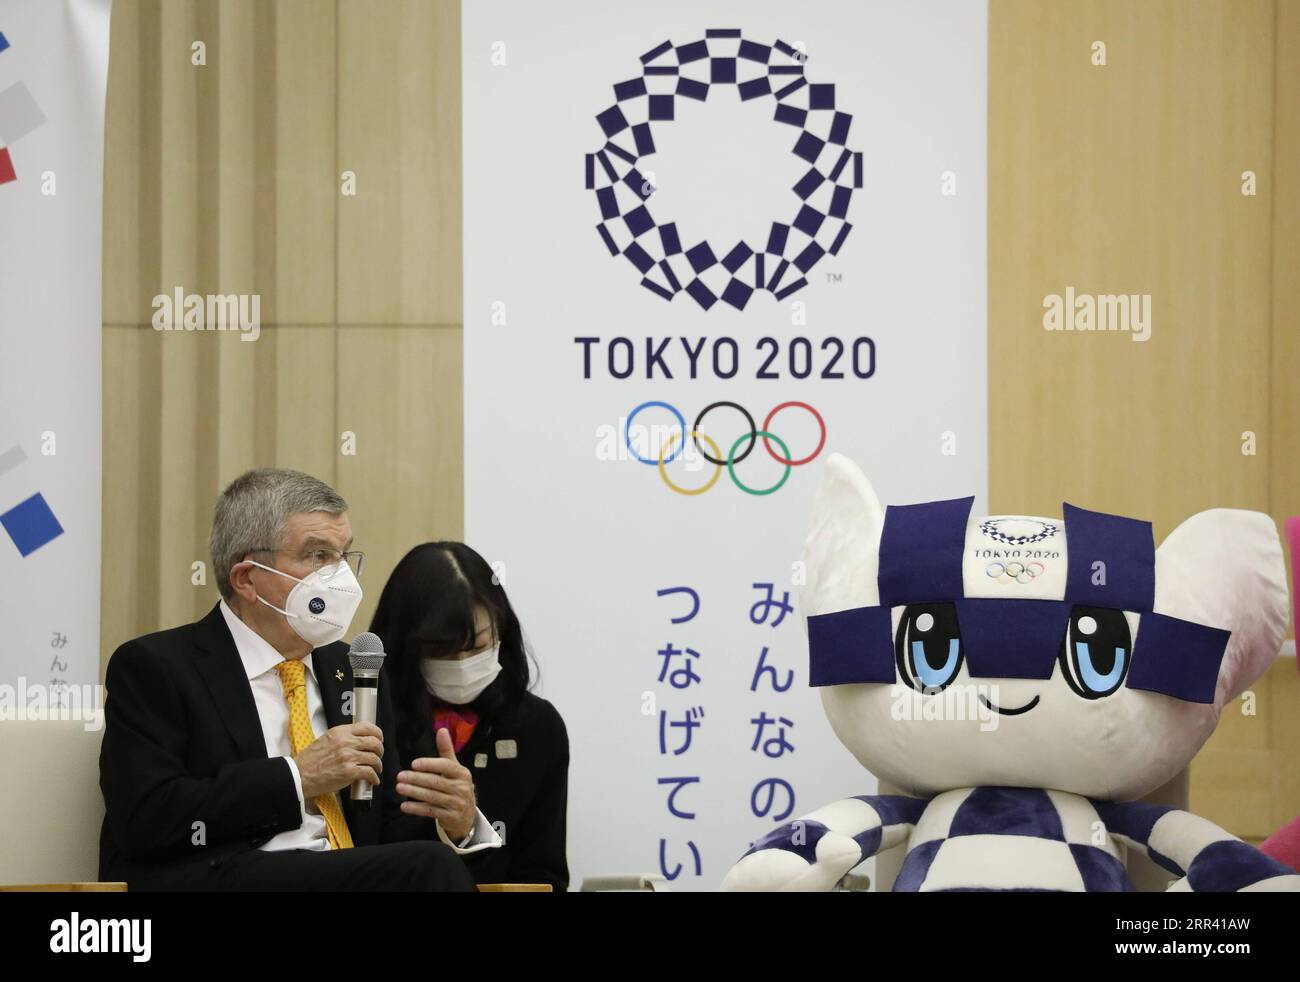 201116 -- TOKIO, 16. November 2020 -- Thomas Bach L, Präsident des Internationalen Olympischen Komitees, spricht während eines Treffens mit dem Gouverneur von Tokio, Koike Yuriko, in Tokio, Japan, am 16. November 2020. SPJAPAN-TOKYO-BACH-KOIKE-MEETING DuxXiaoyi PUBLICATIONxNOTxINxCHN Stockfoto